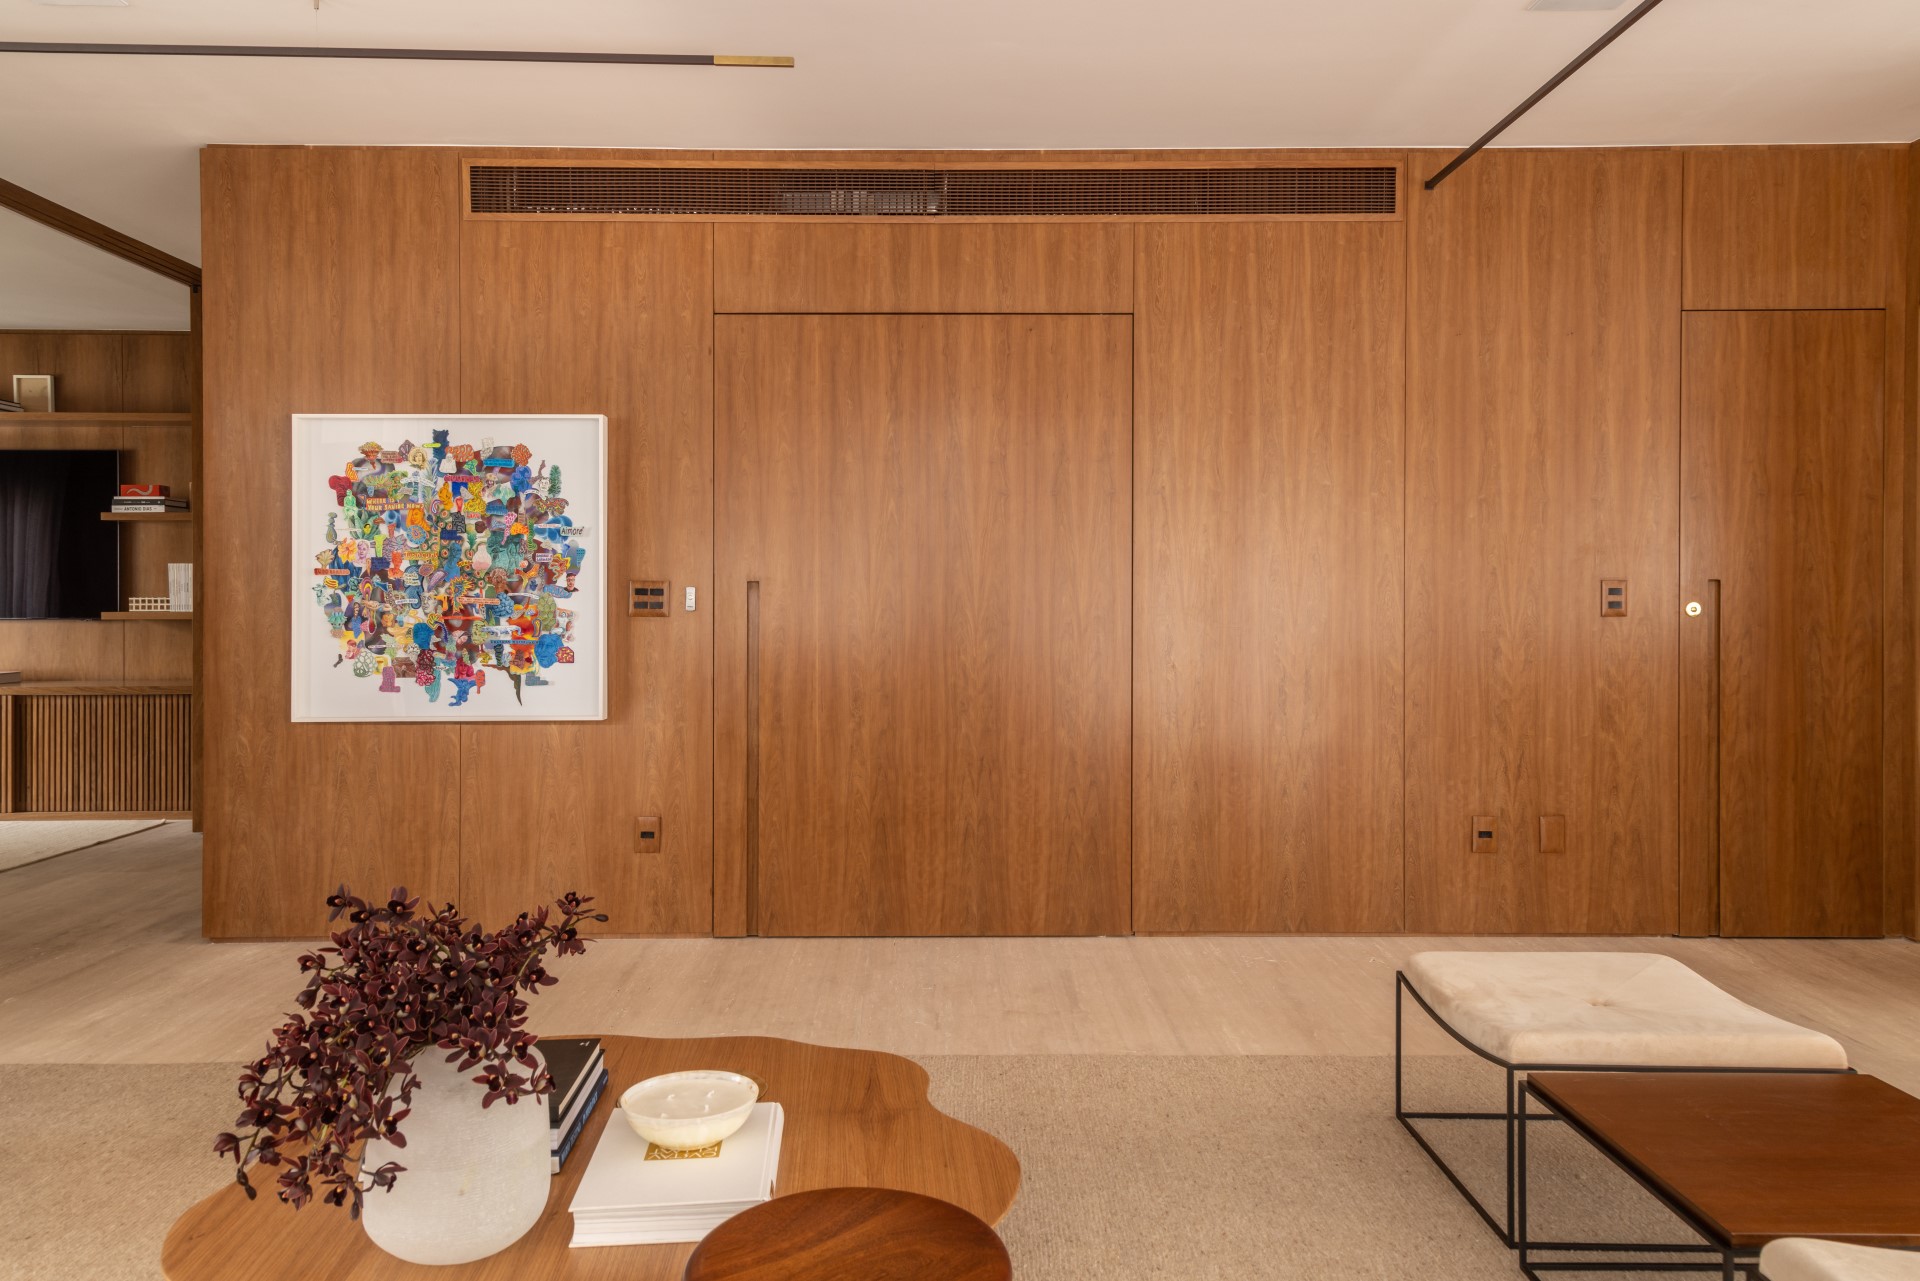 Projeto de Denise Polverini e Fernanda Villefort. Na foto, sala de estar com parede revestida de madeira e porta pivotante.